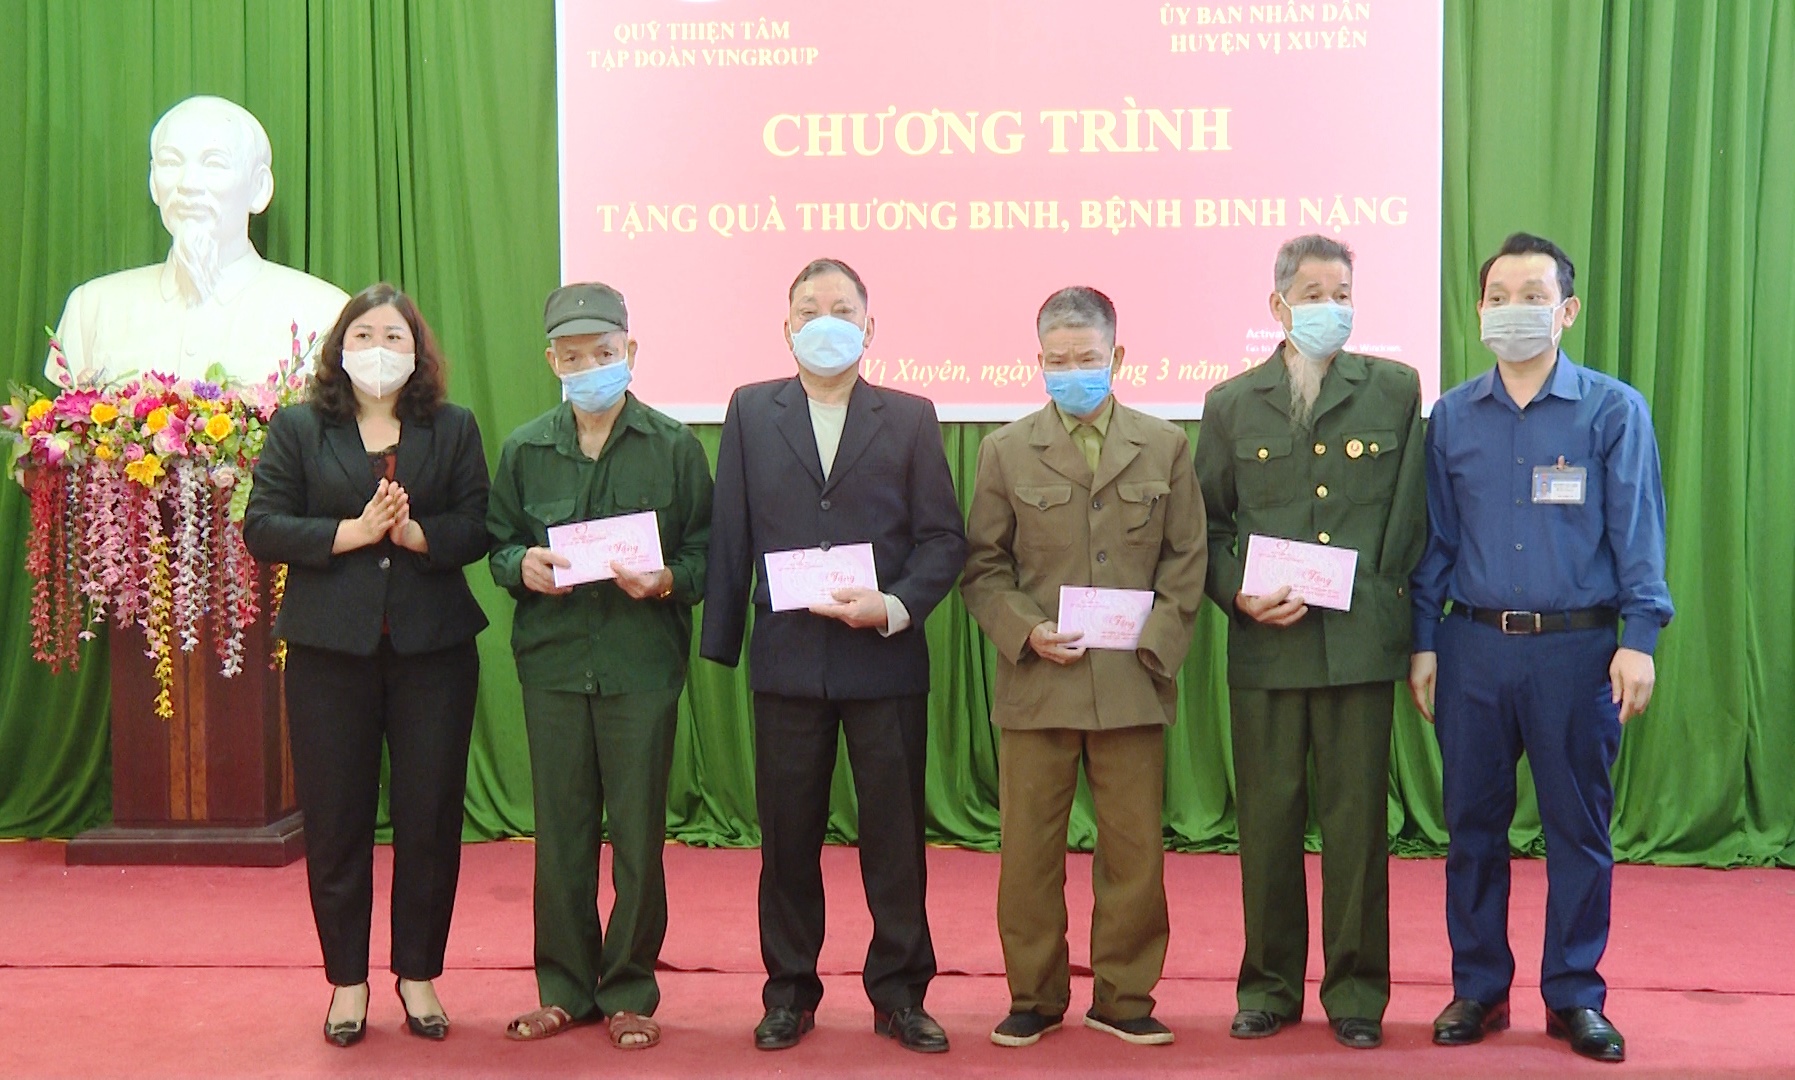 Quỹ Thiện Tâm – Tập đoàn Vingroup trao tặng 90 triệu đồng  đến thương binh, bệnh binh nặng tại Vị Xuyên.